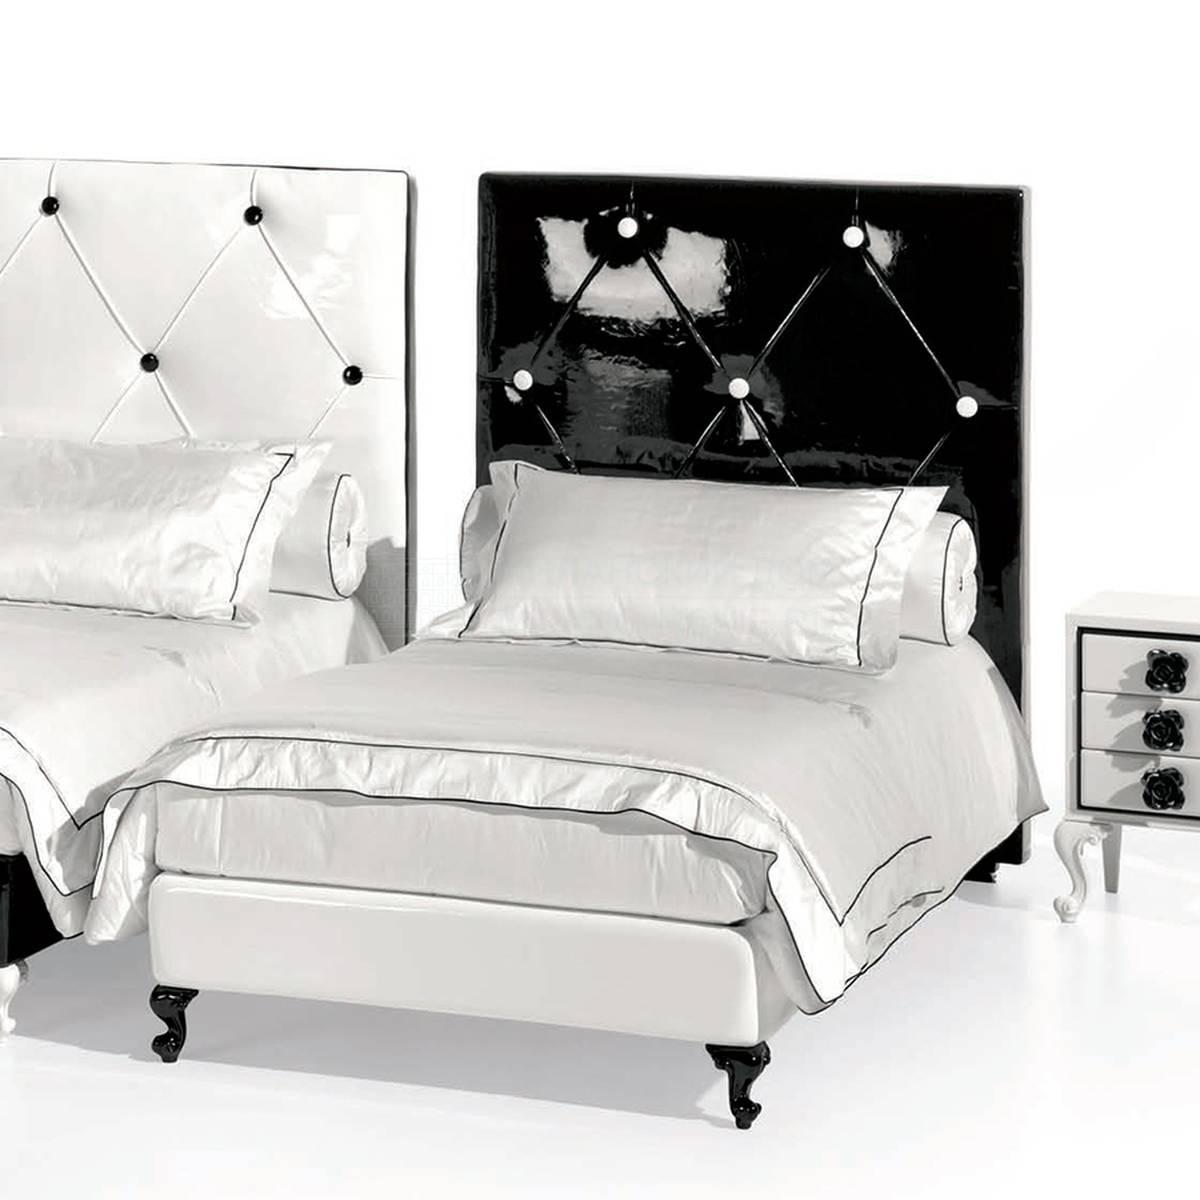 Кожаная кровать AbsoluteForever JULIAN art.420GS из Италии фабрики HALLEY